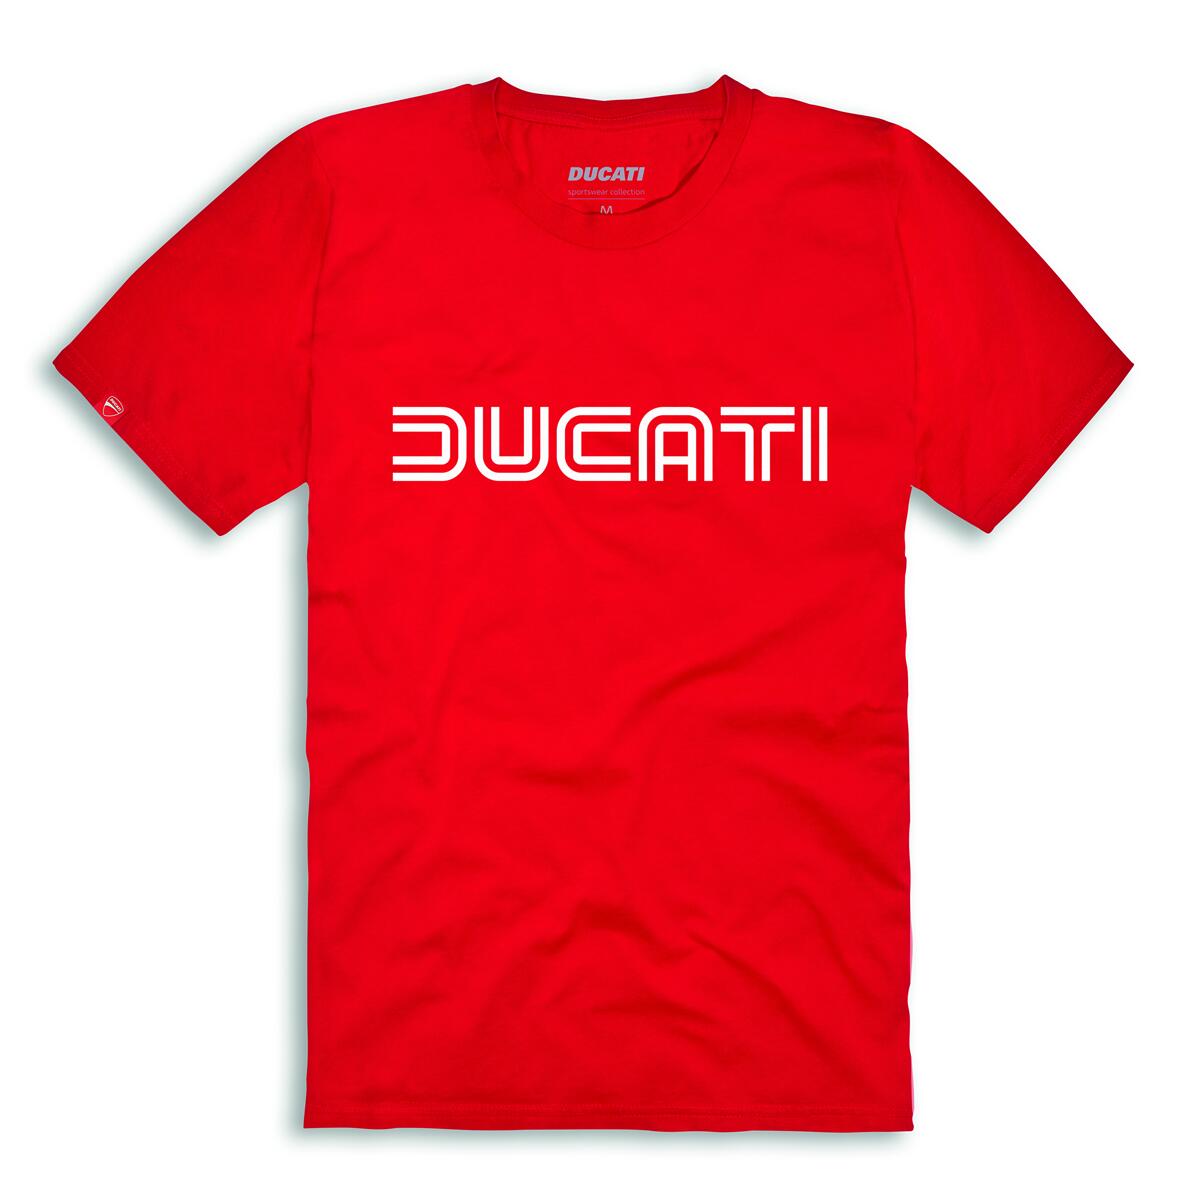 【DUCATI】《Ducatiana2.0 ’80　ショートスリーブTシャツ 9877010/9877018》ドゥカティアパレル 正規品 用品 Tシャツ 半袖 男女兼用 Sサイズ Mサイズ Lサイズ XLサイズ レッド ブラック グレー 定番品 人気商品